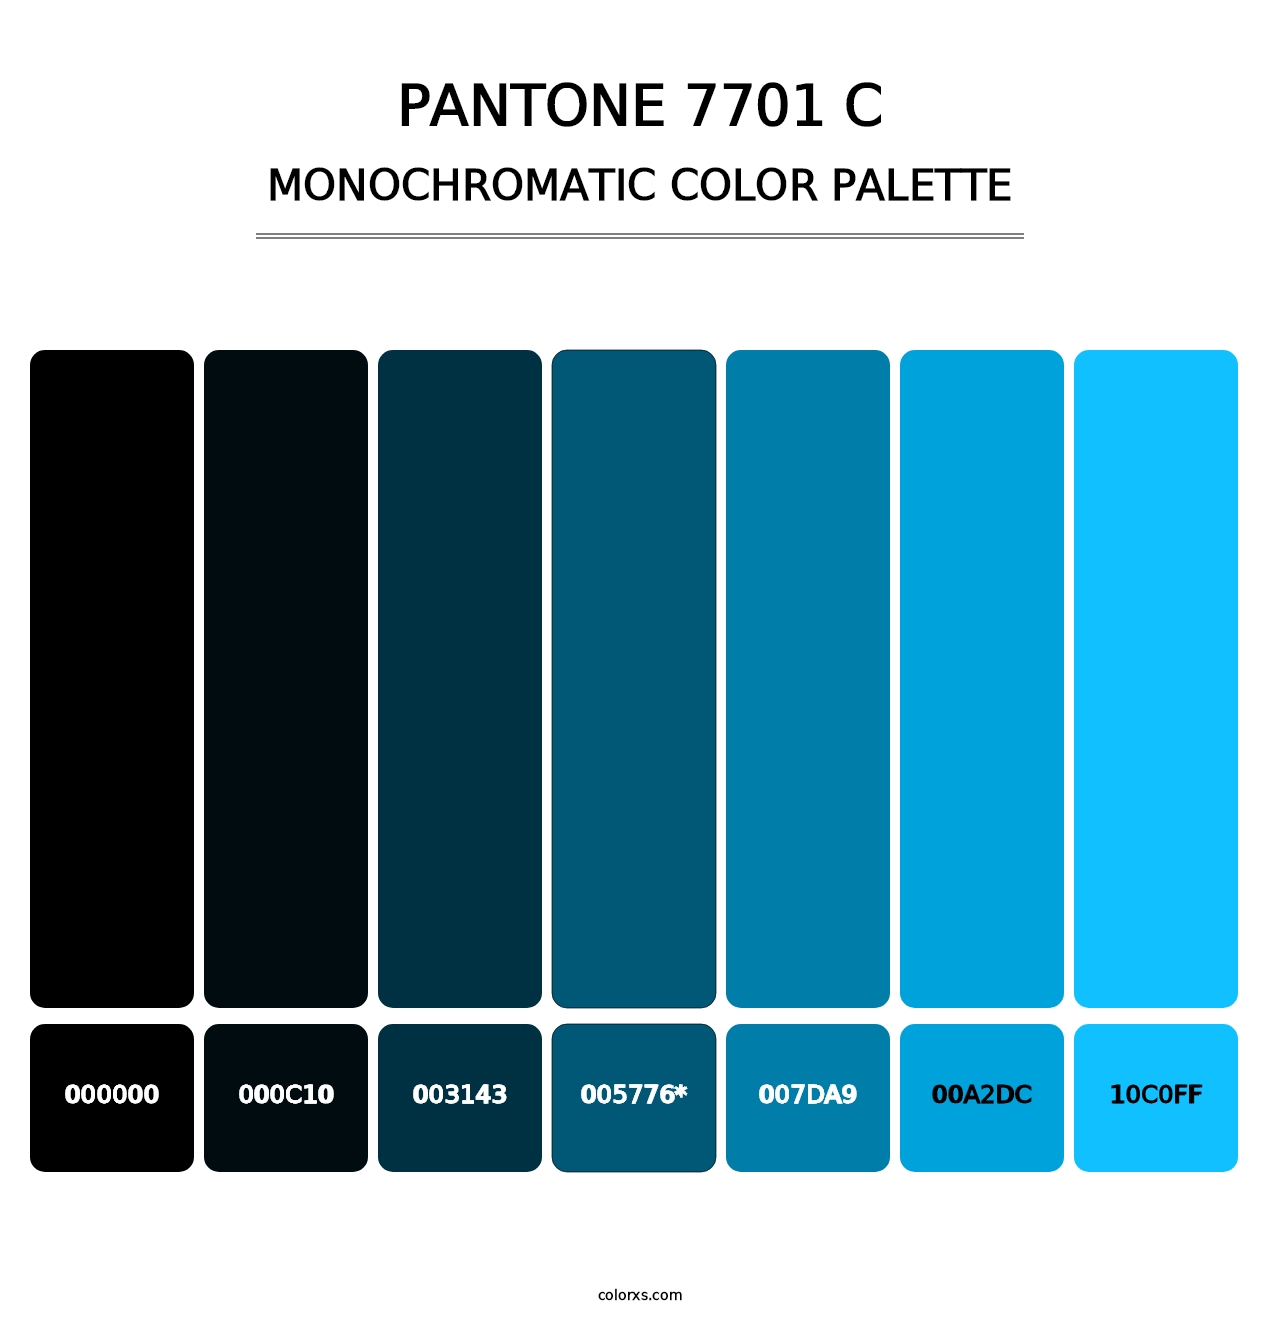 PANTONE 7701 C - Monochromatic Color Palette